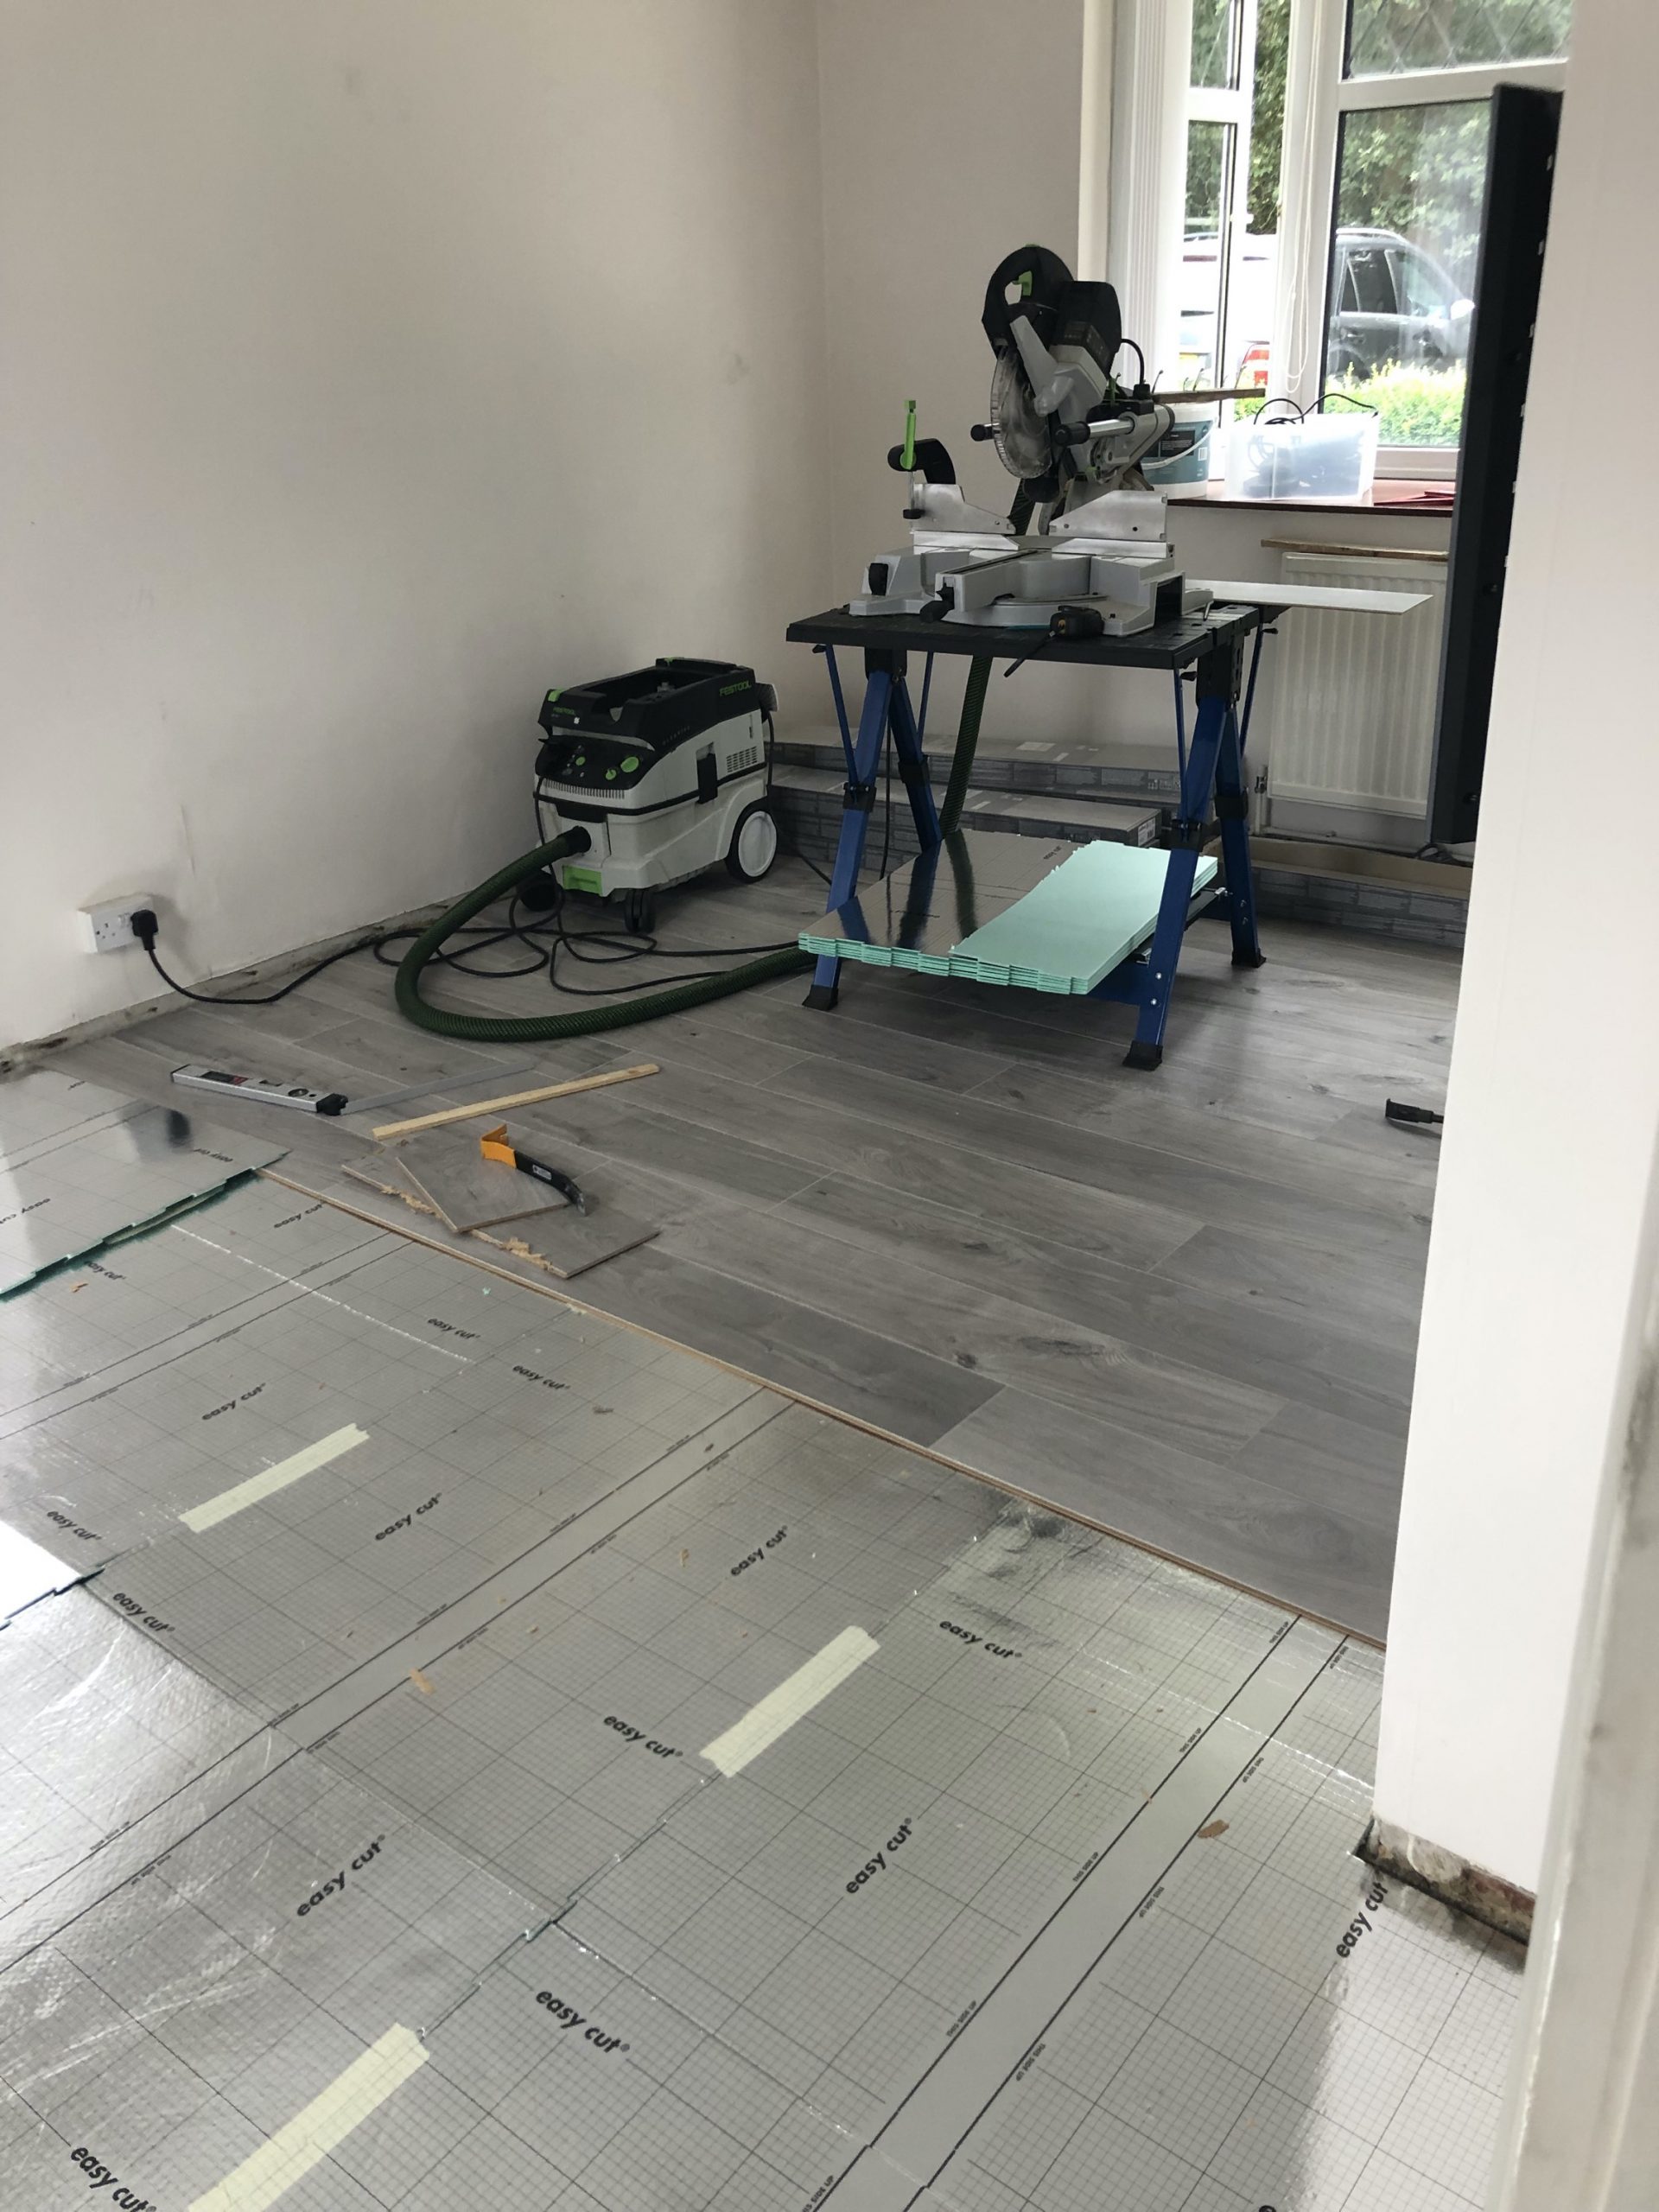 Laminate Flooring Installation